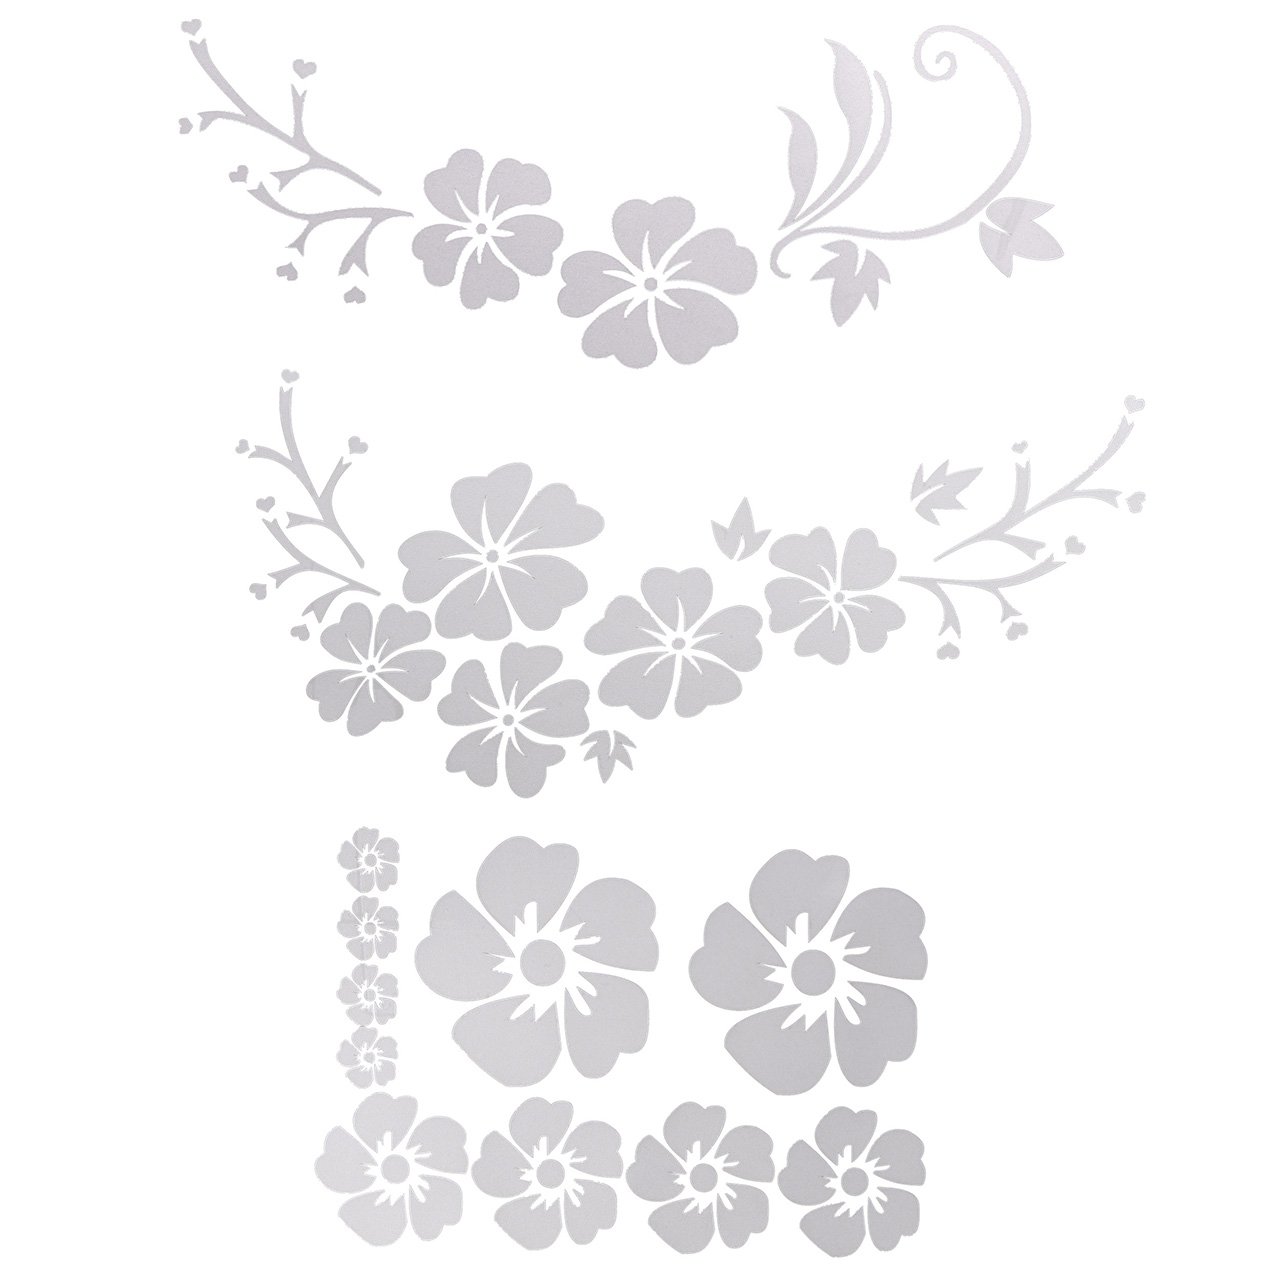 ACBungji Hibiskus Autoaufkleber Blumen blumenaufkleber autotattoos selbstklebend Aufkleber Fenster Schwarz Weiß wasserfest (Weiß Blume) von ACBungji